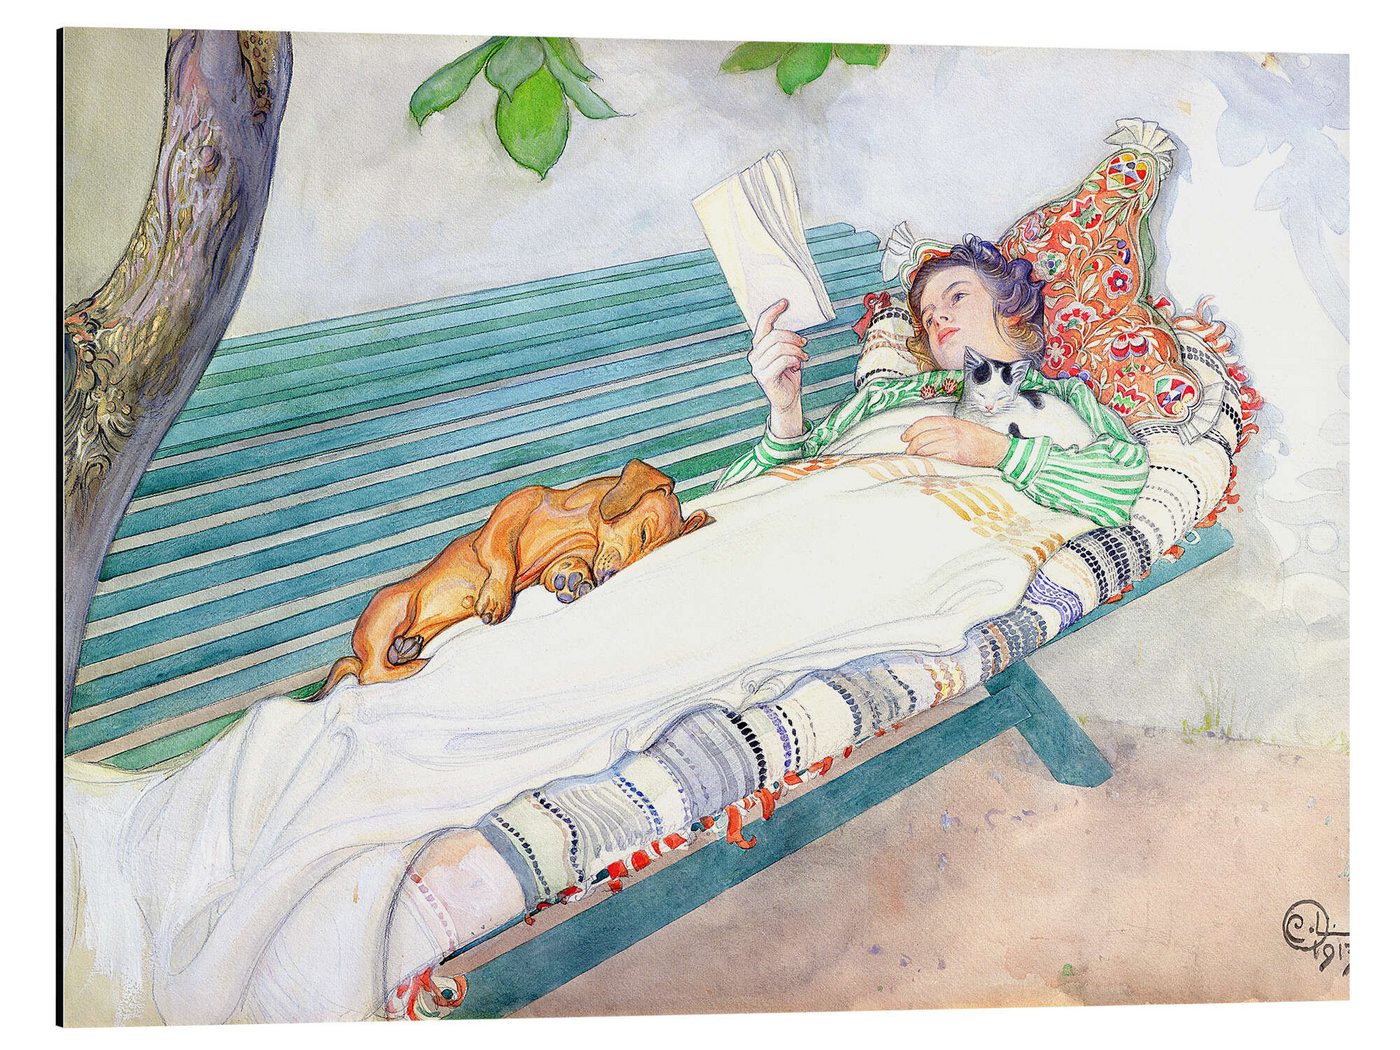 Posterlounge Alu-Dibond-Druck Carl Larsson, Auf einer Bank liegende Frau, Schlafzimmer Landhausstil Malerei von Posterlounge